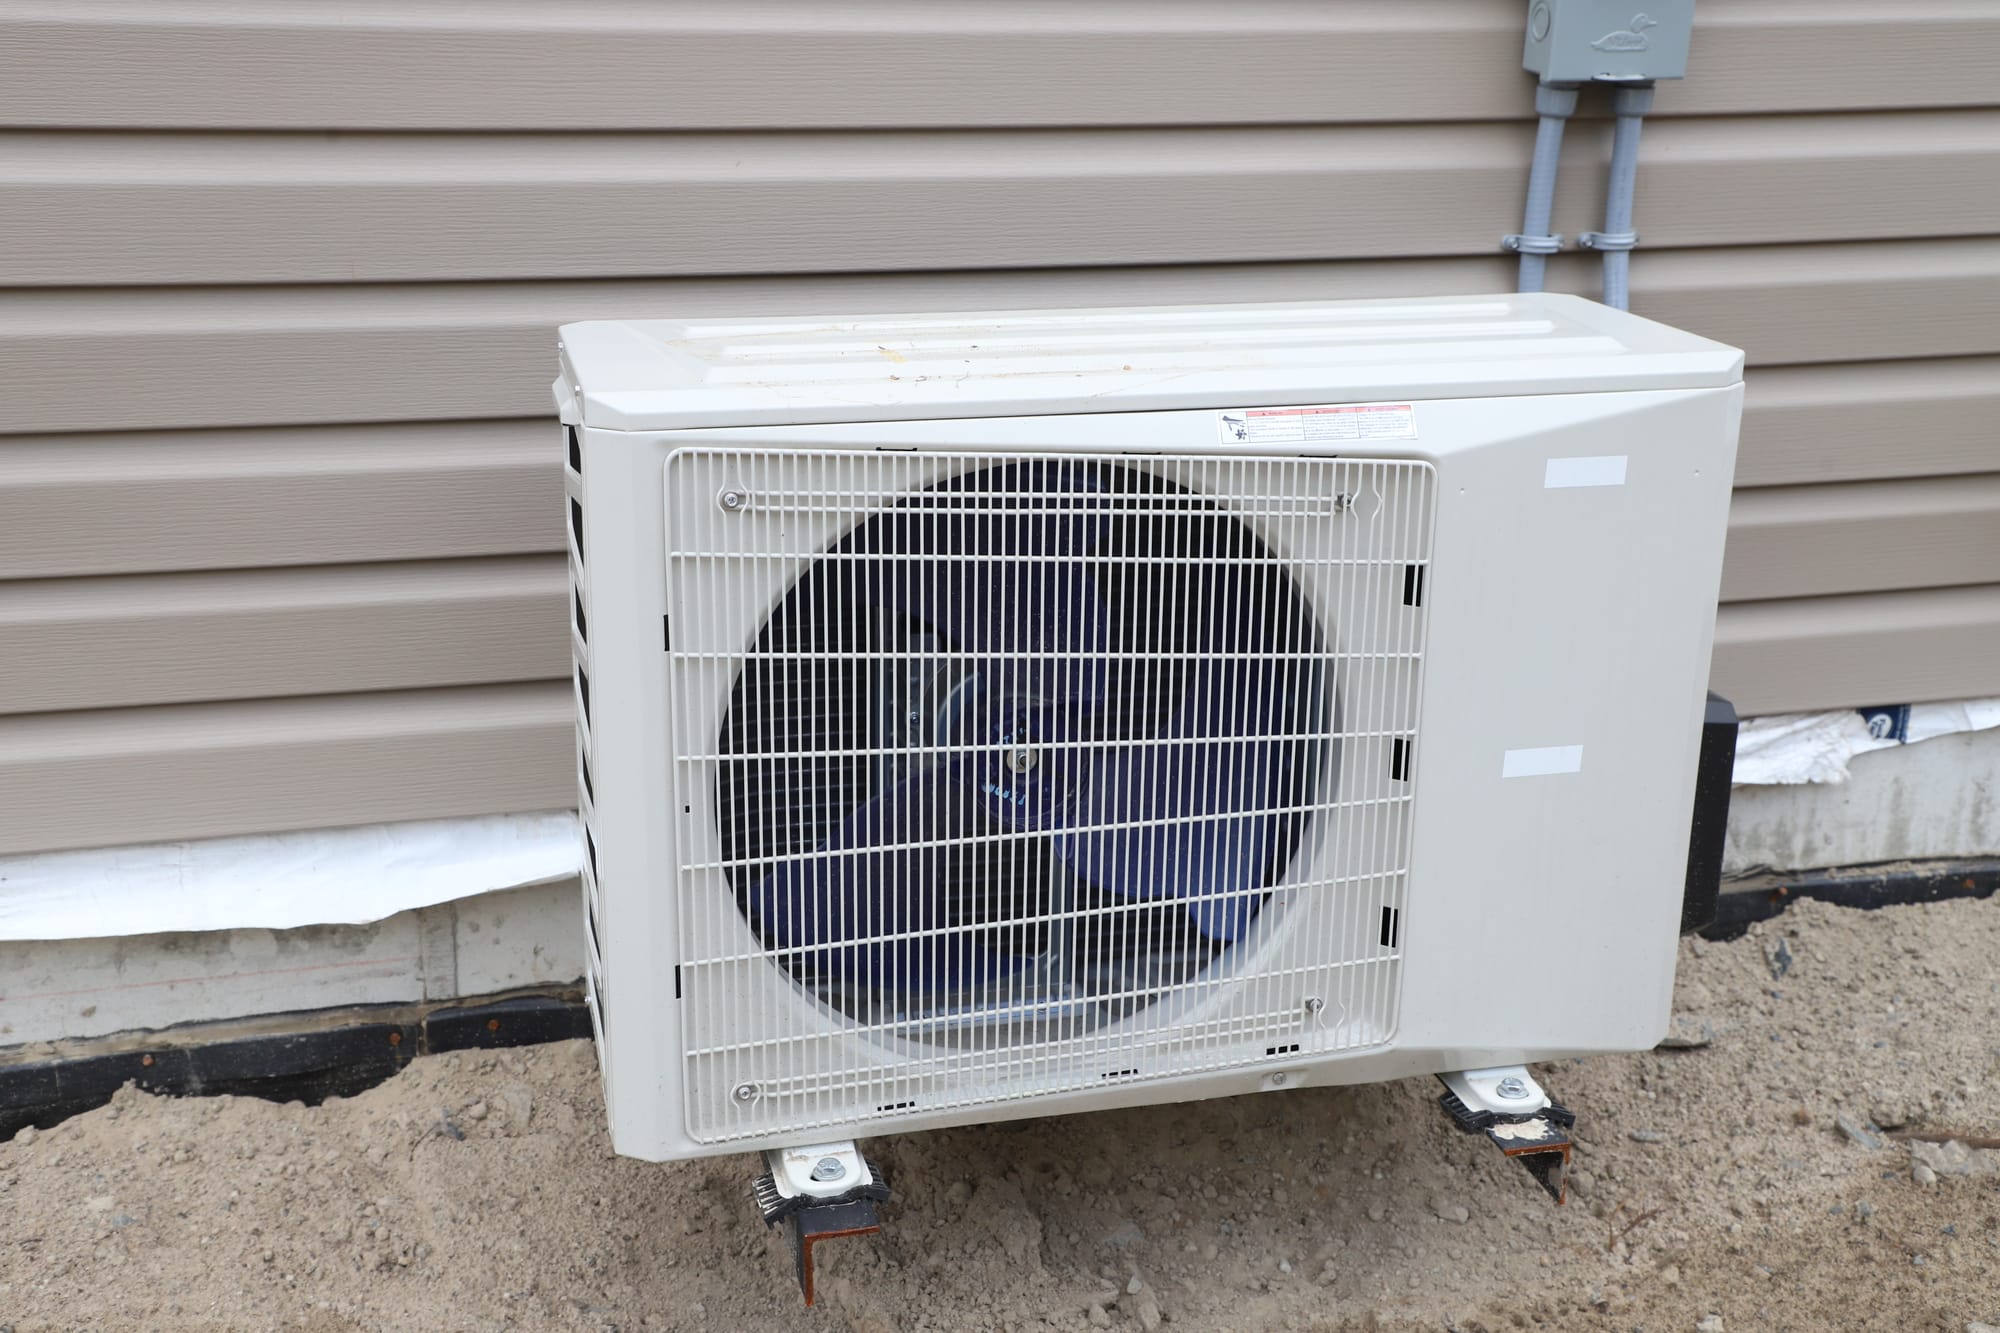 Heat pump program aims to help homeowners increase efficiency